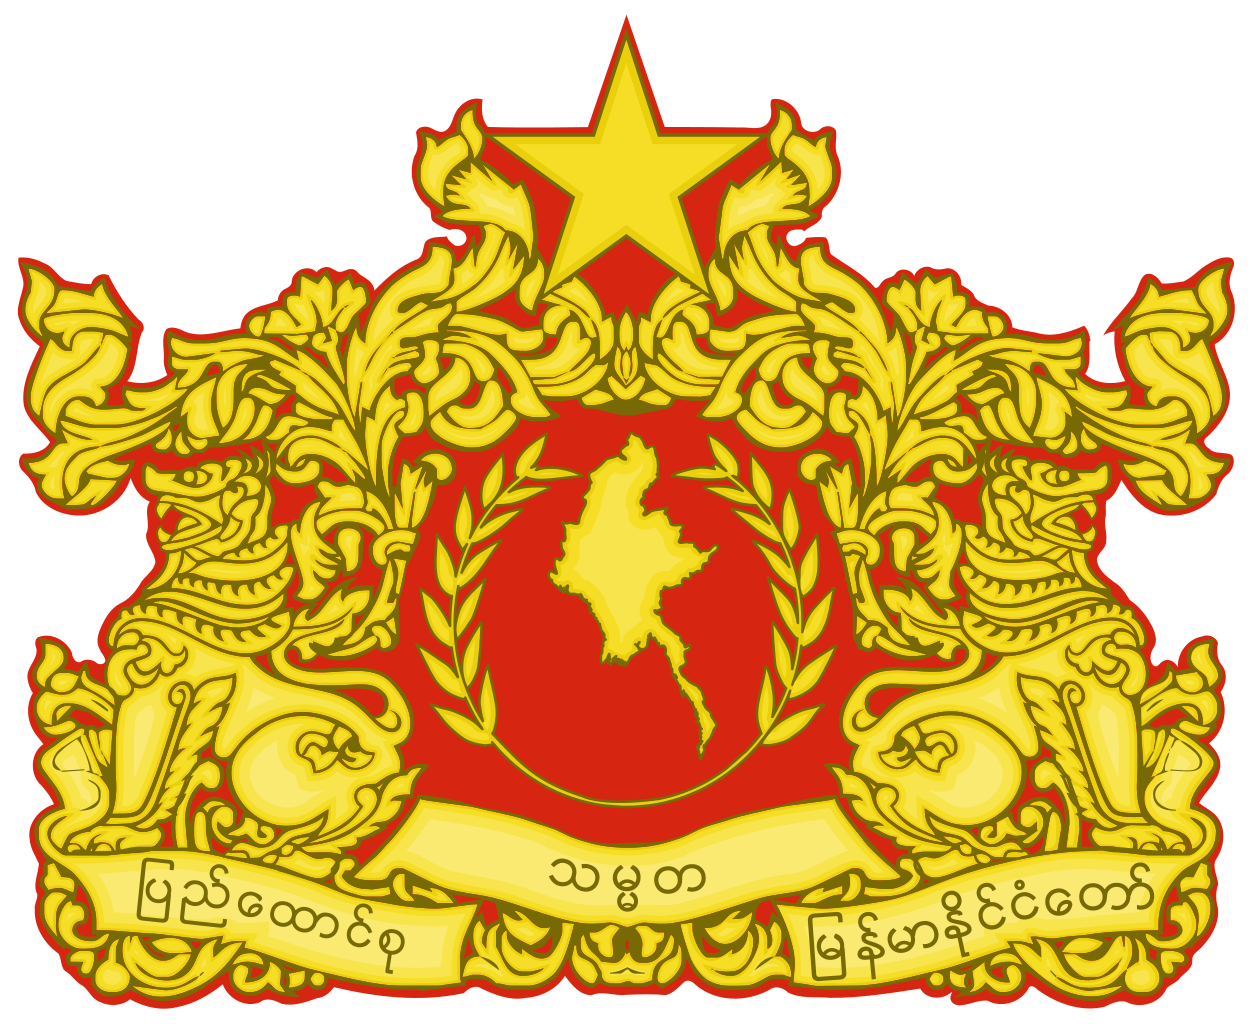 緬甸聯邦共和國國徽